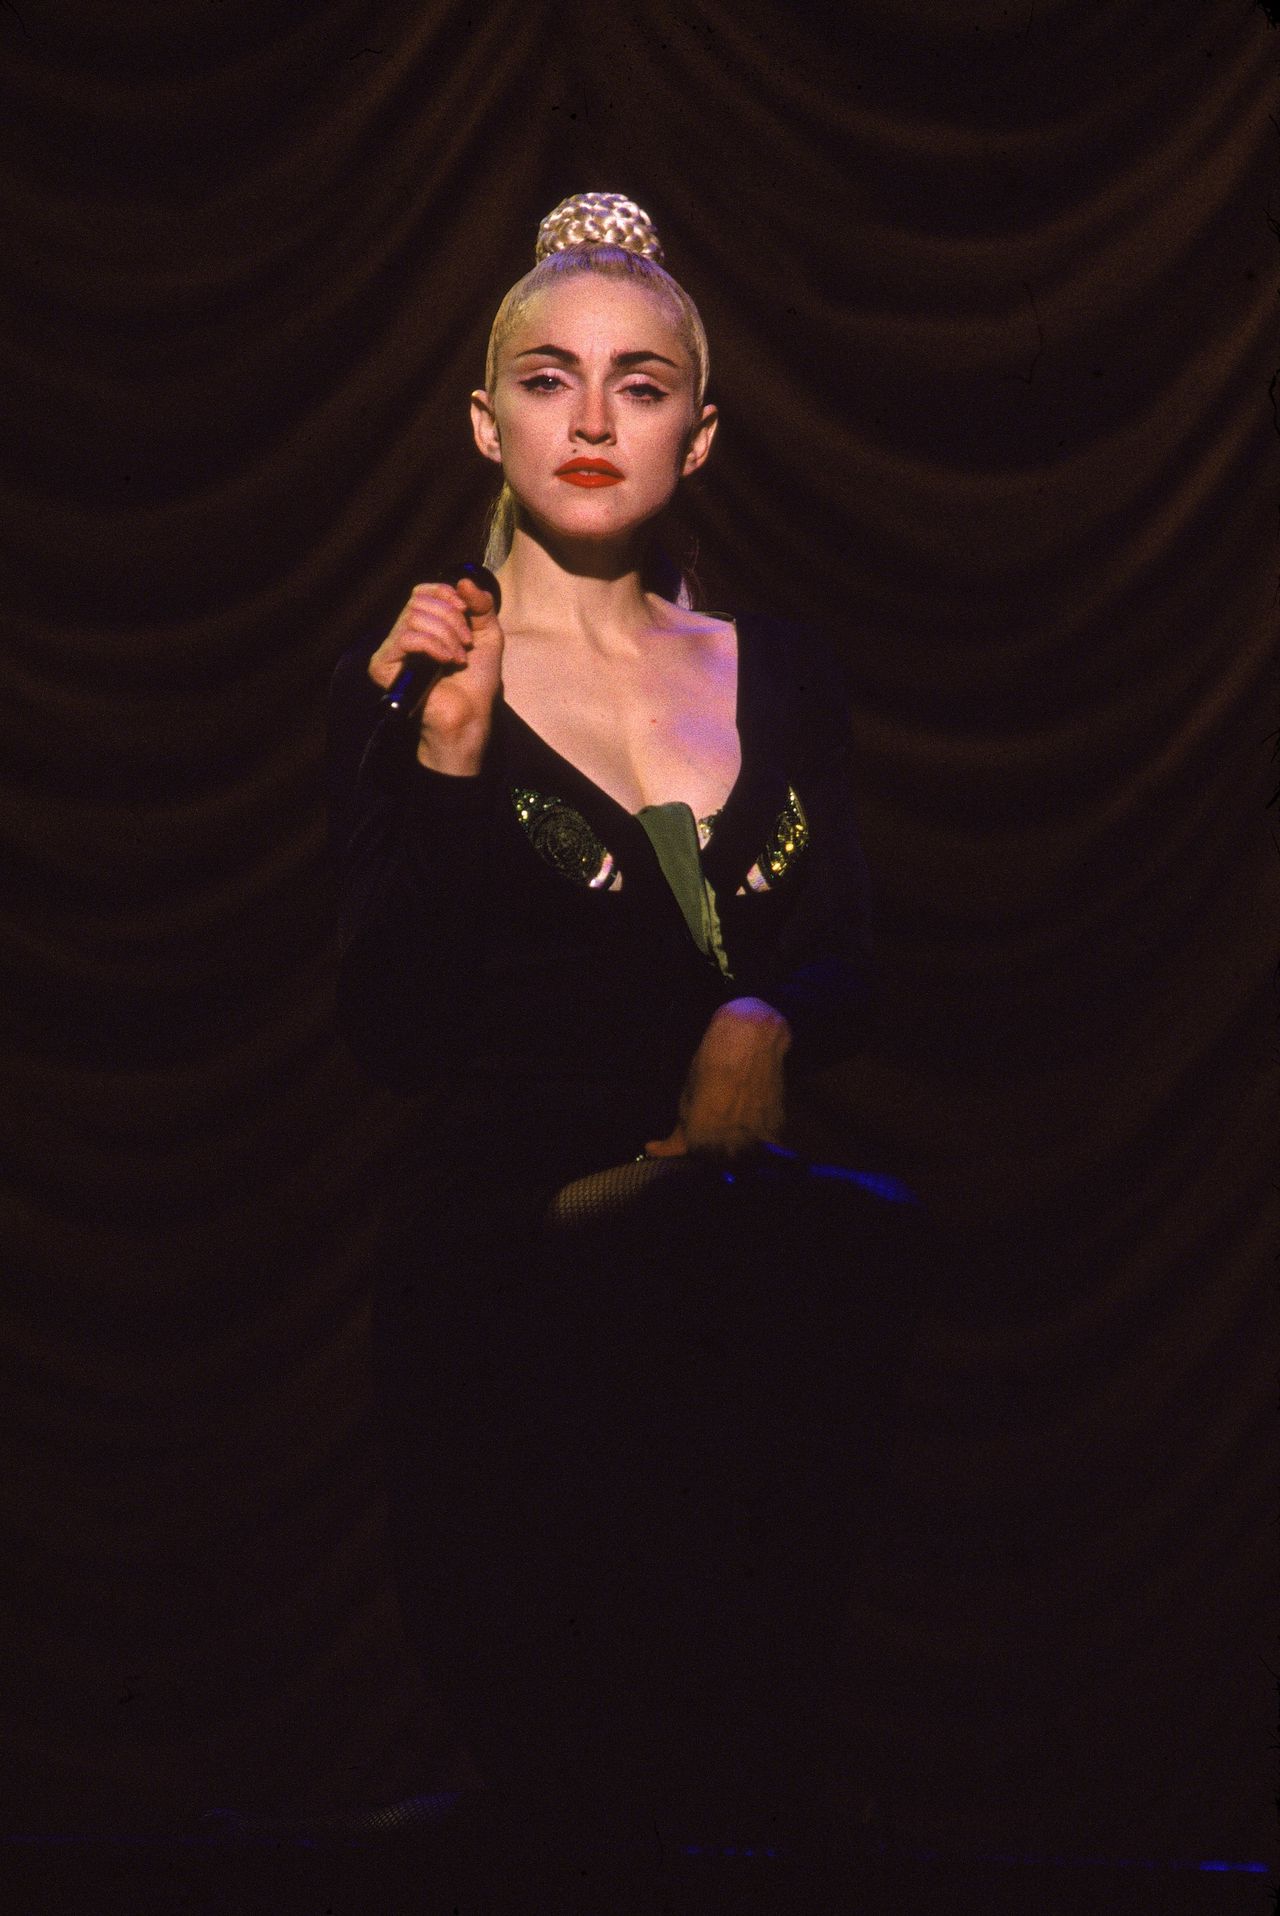 Imponerende biografie toont Madonna als artistiek genie, altijd de baas 